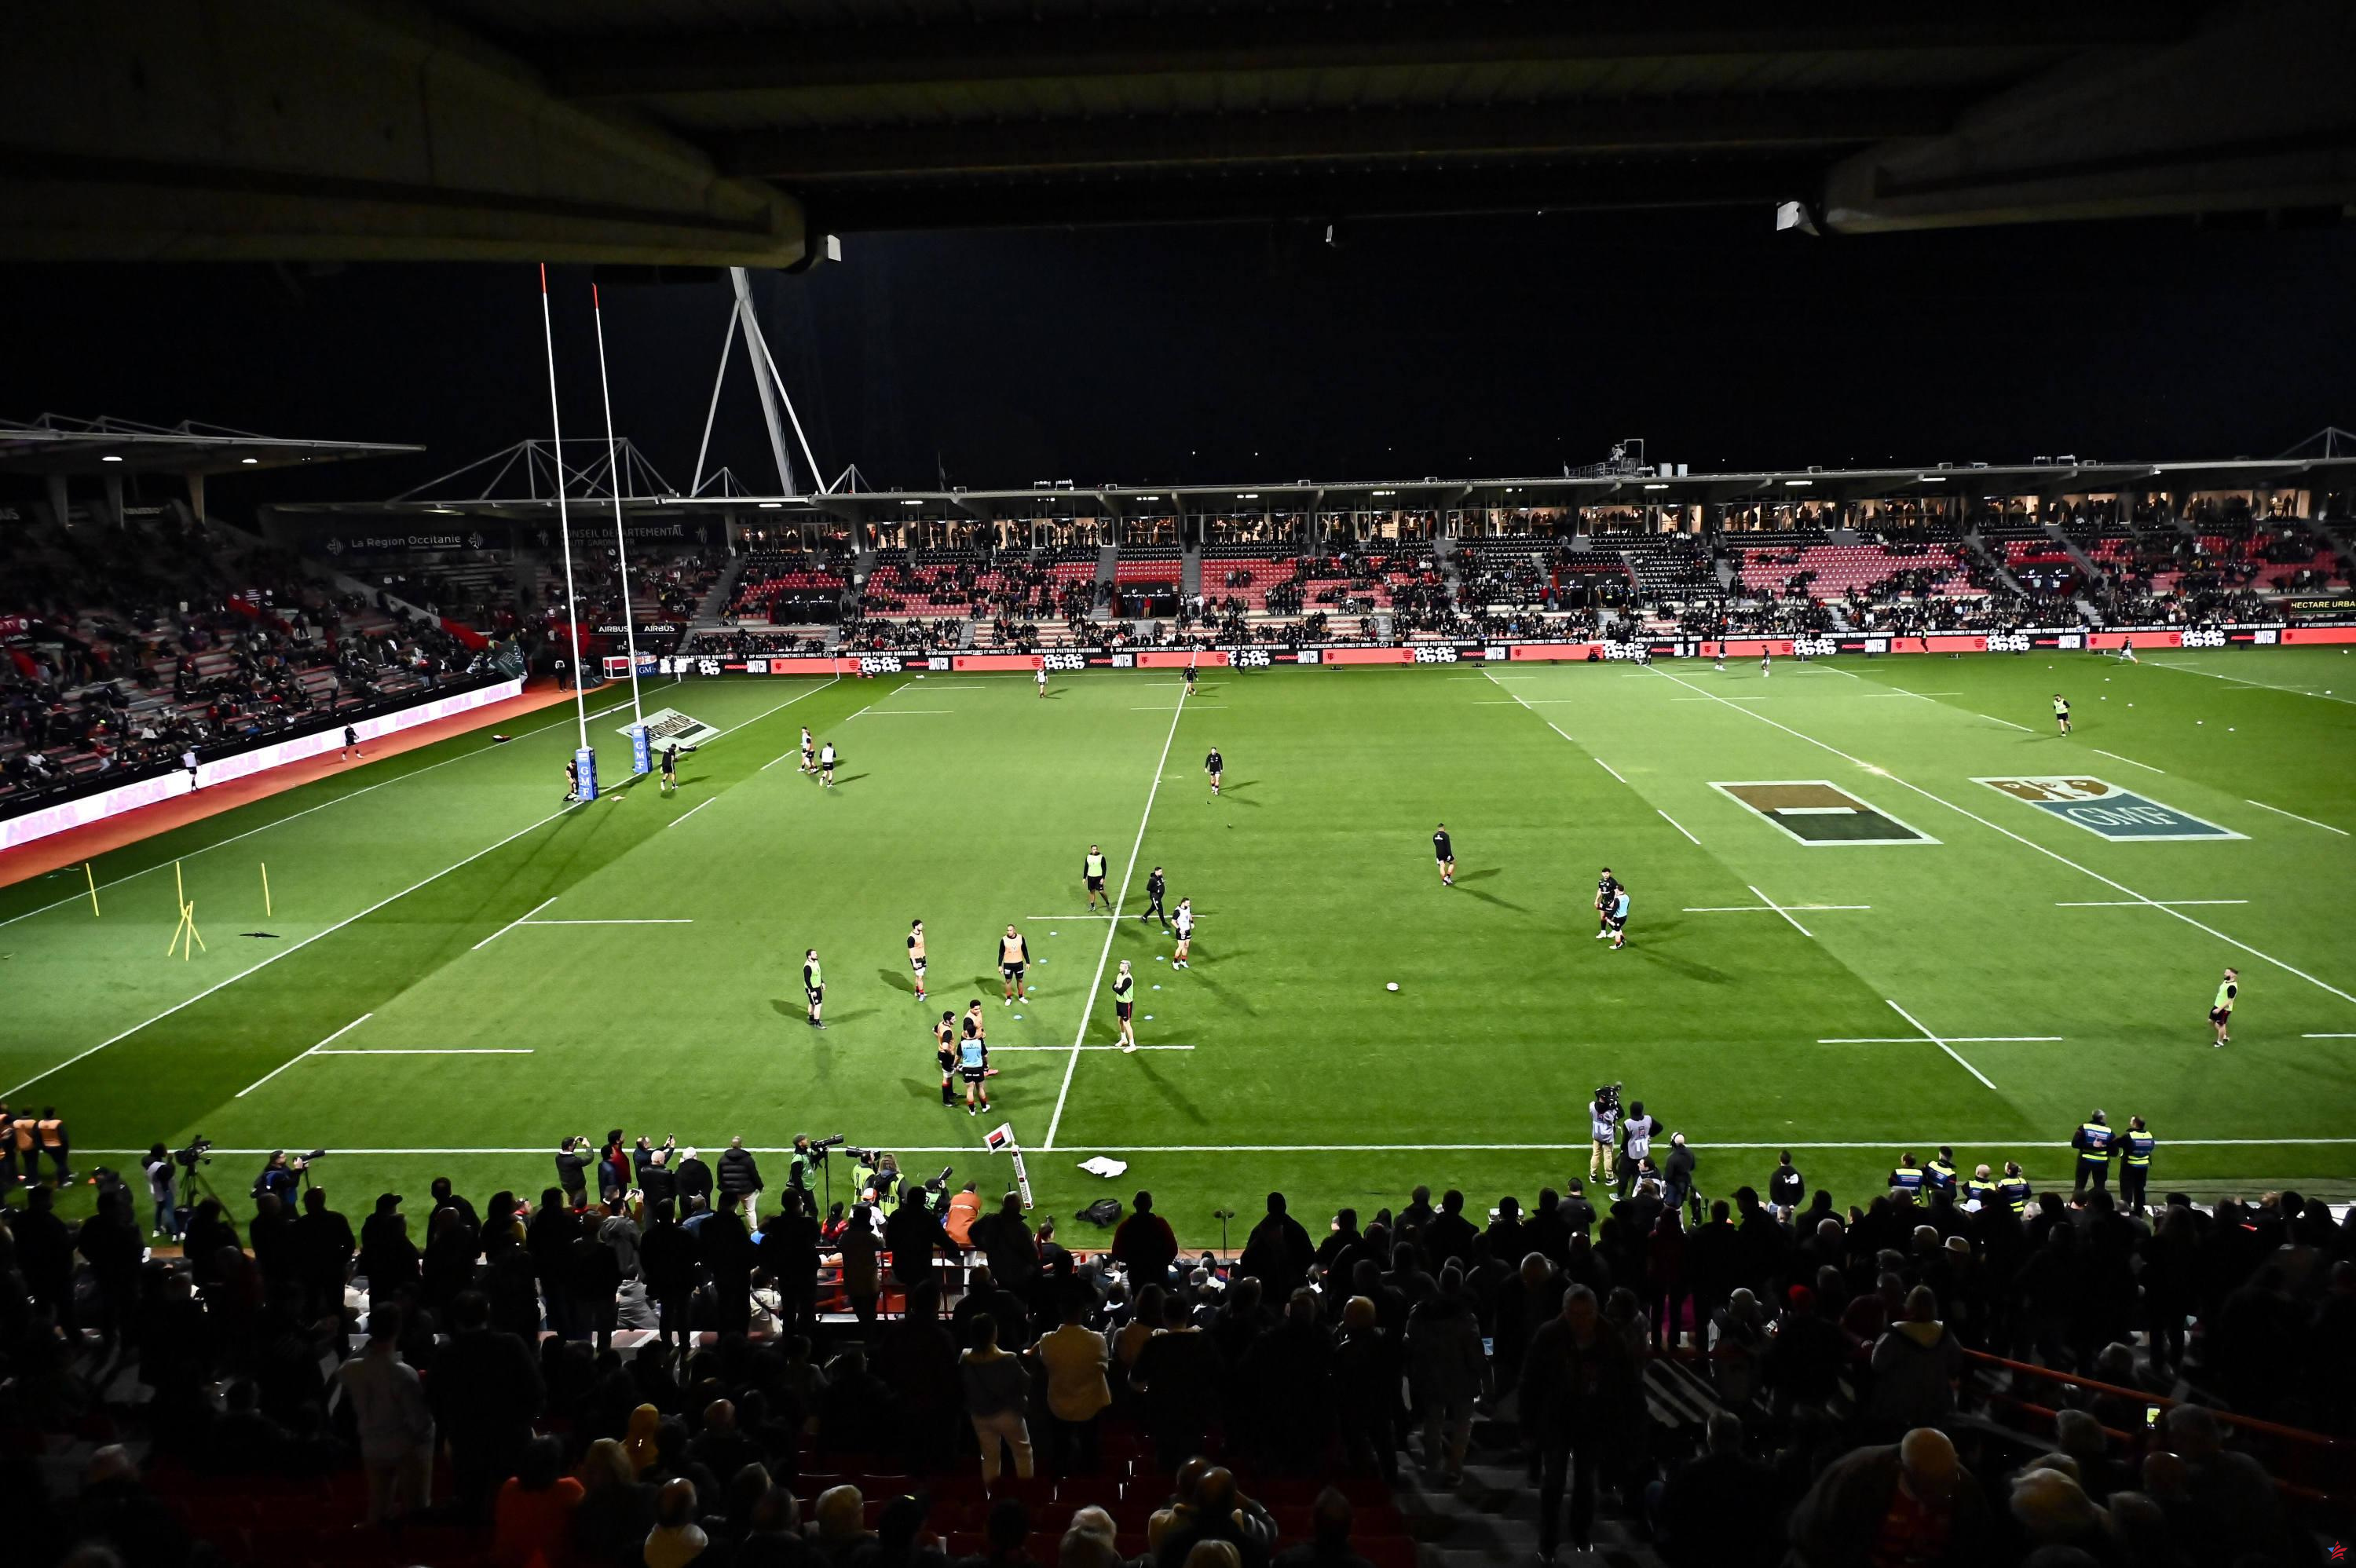 Rugby: luz verde para la ampliación del estadio Ernest-Wallon de Toulouse